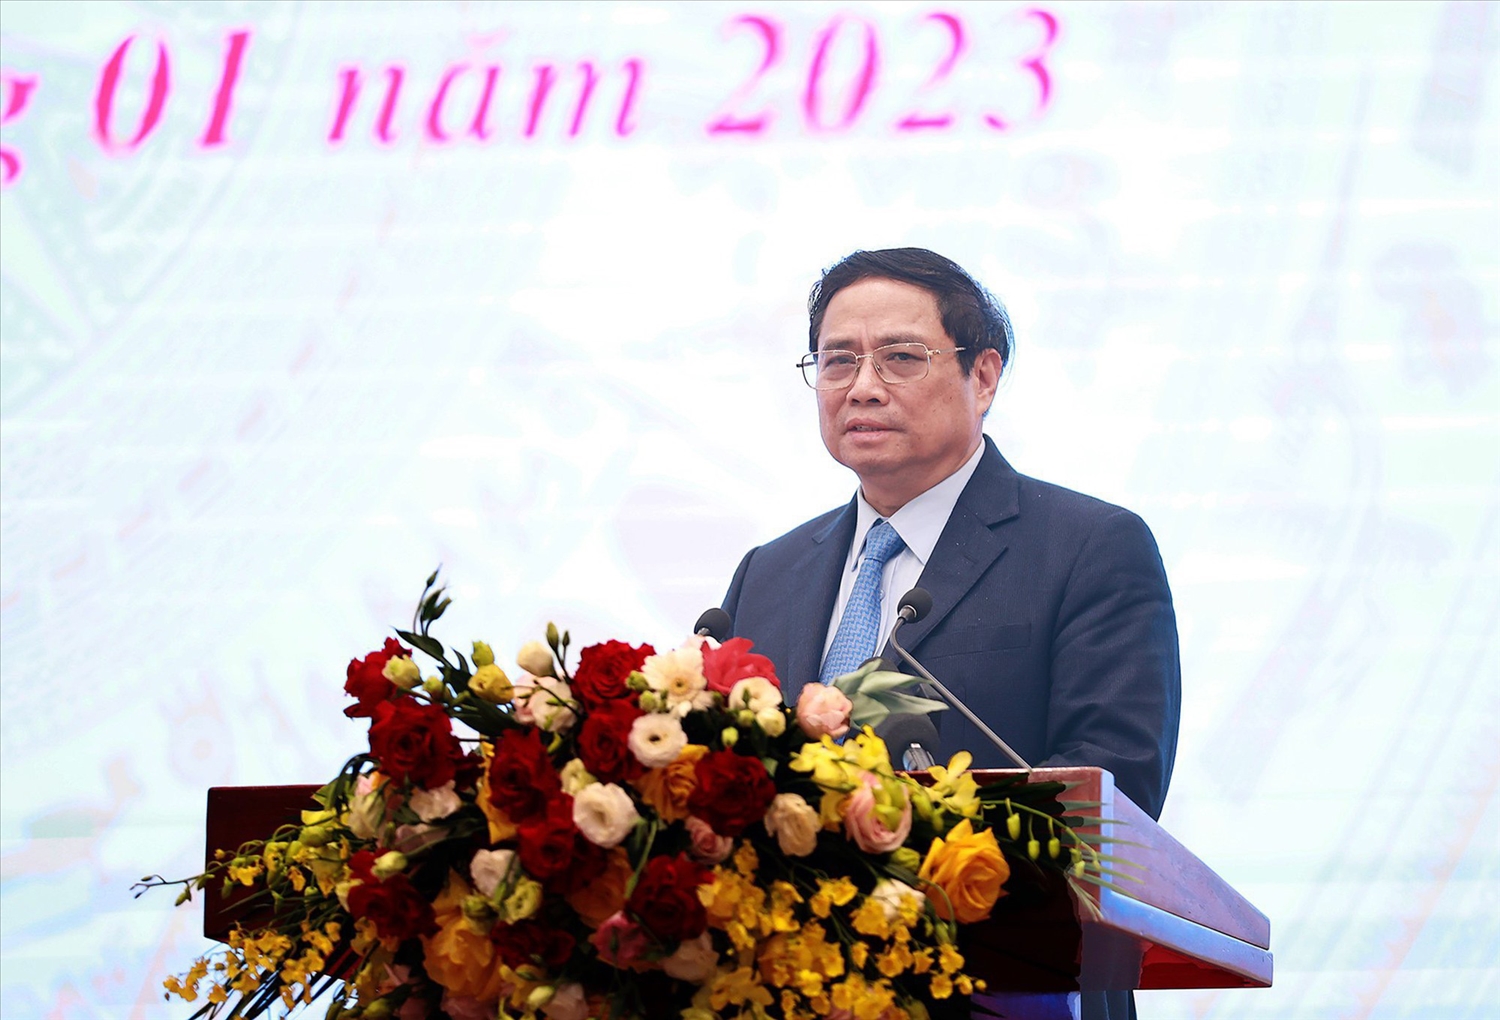 Thủ tướng Chính phủ Phạm Minh Chính dự và phát biểu tại Hội nghị triển khai nhiệm vụ lao động, người có công và xã hội năm 2023 - Ảnh: VGP/Nhật Bắc